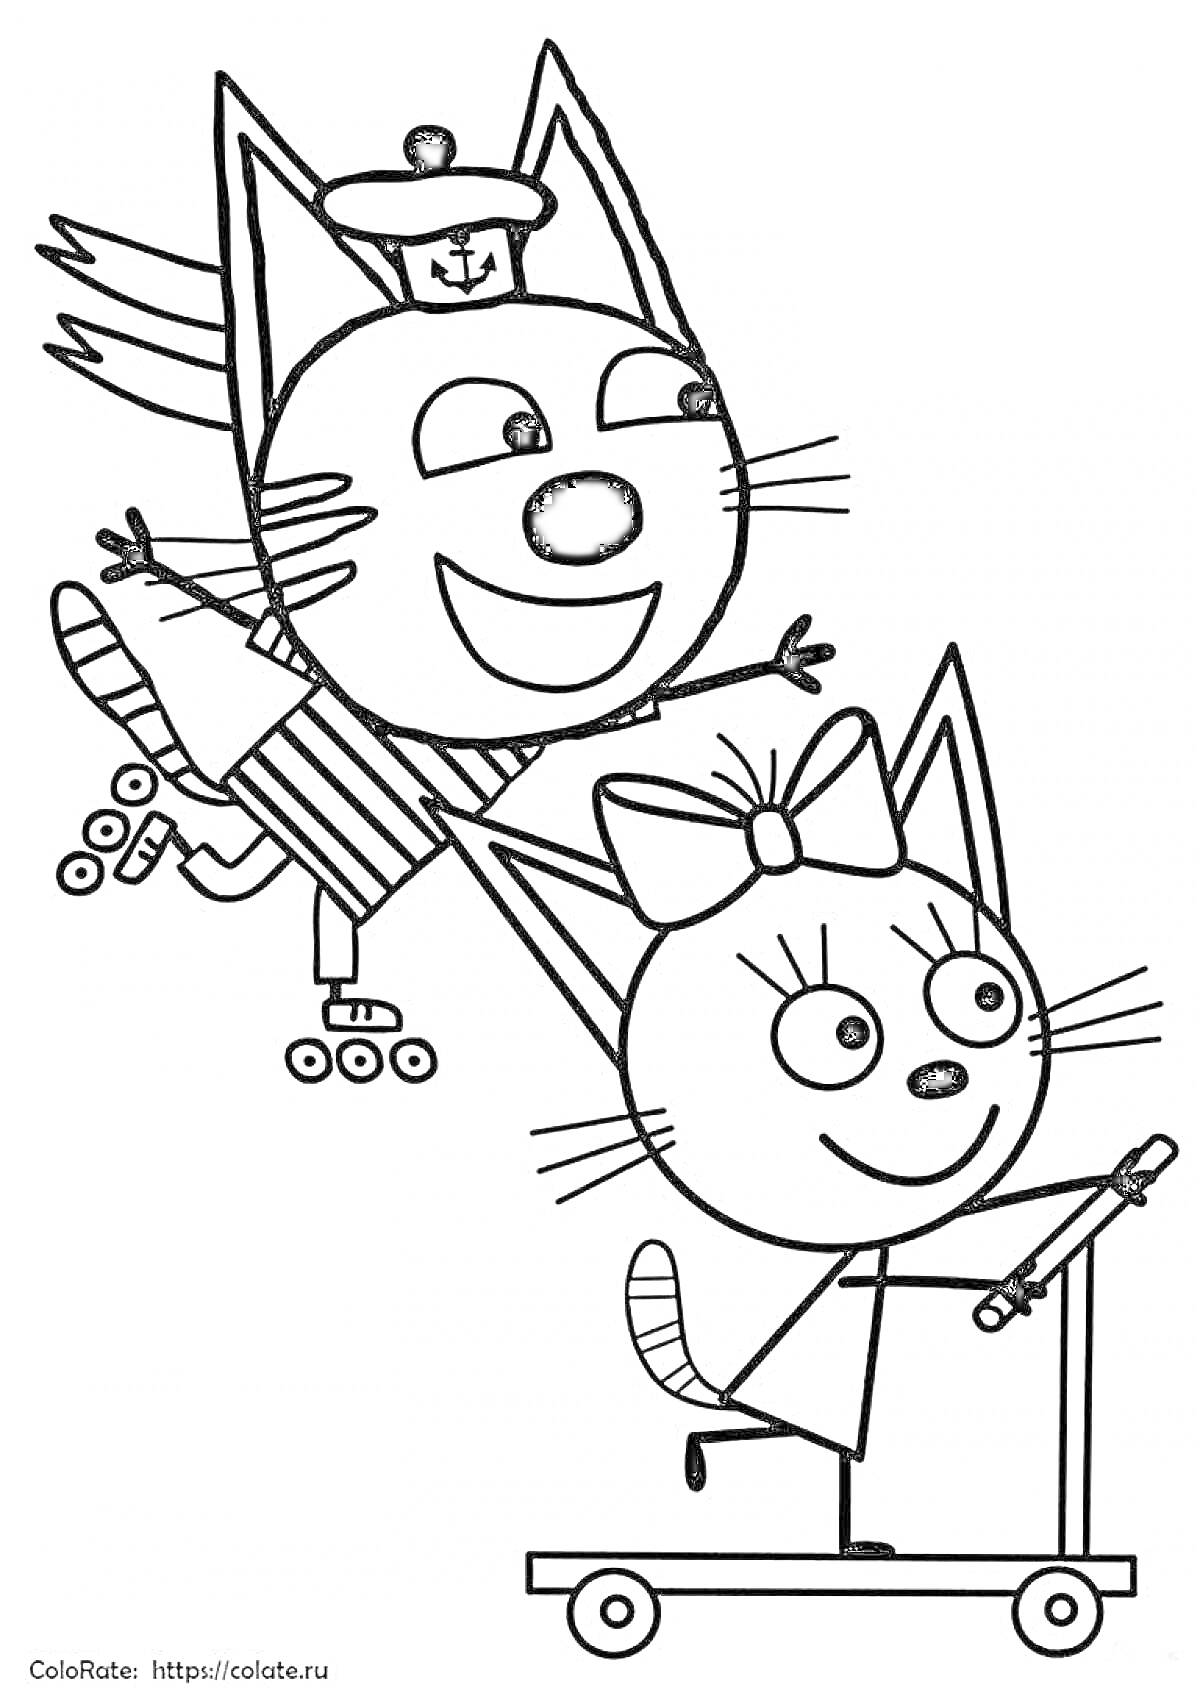 Раскраска Кот на роликовых коньках с морской шапкой на голове и кот на самокате с бантом на голове